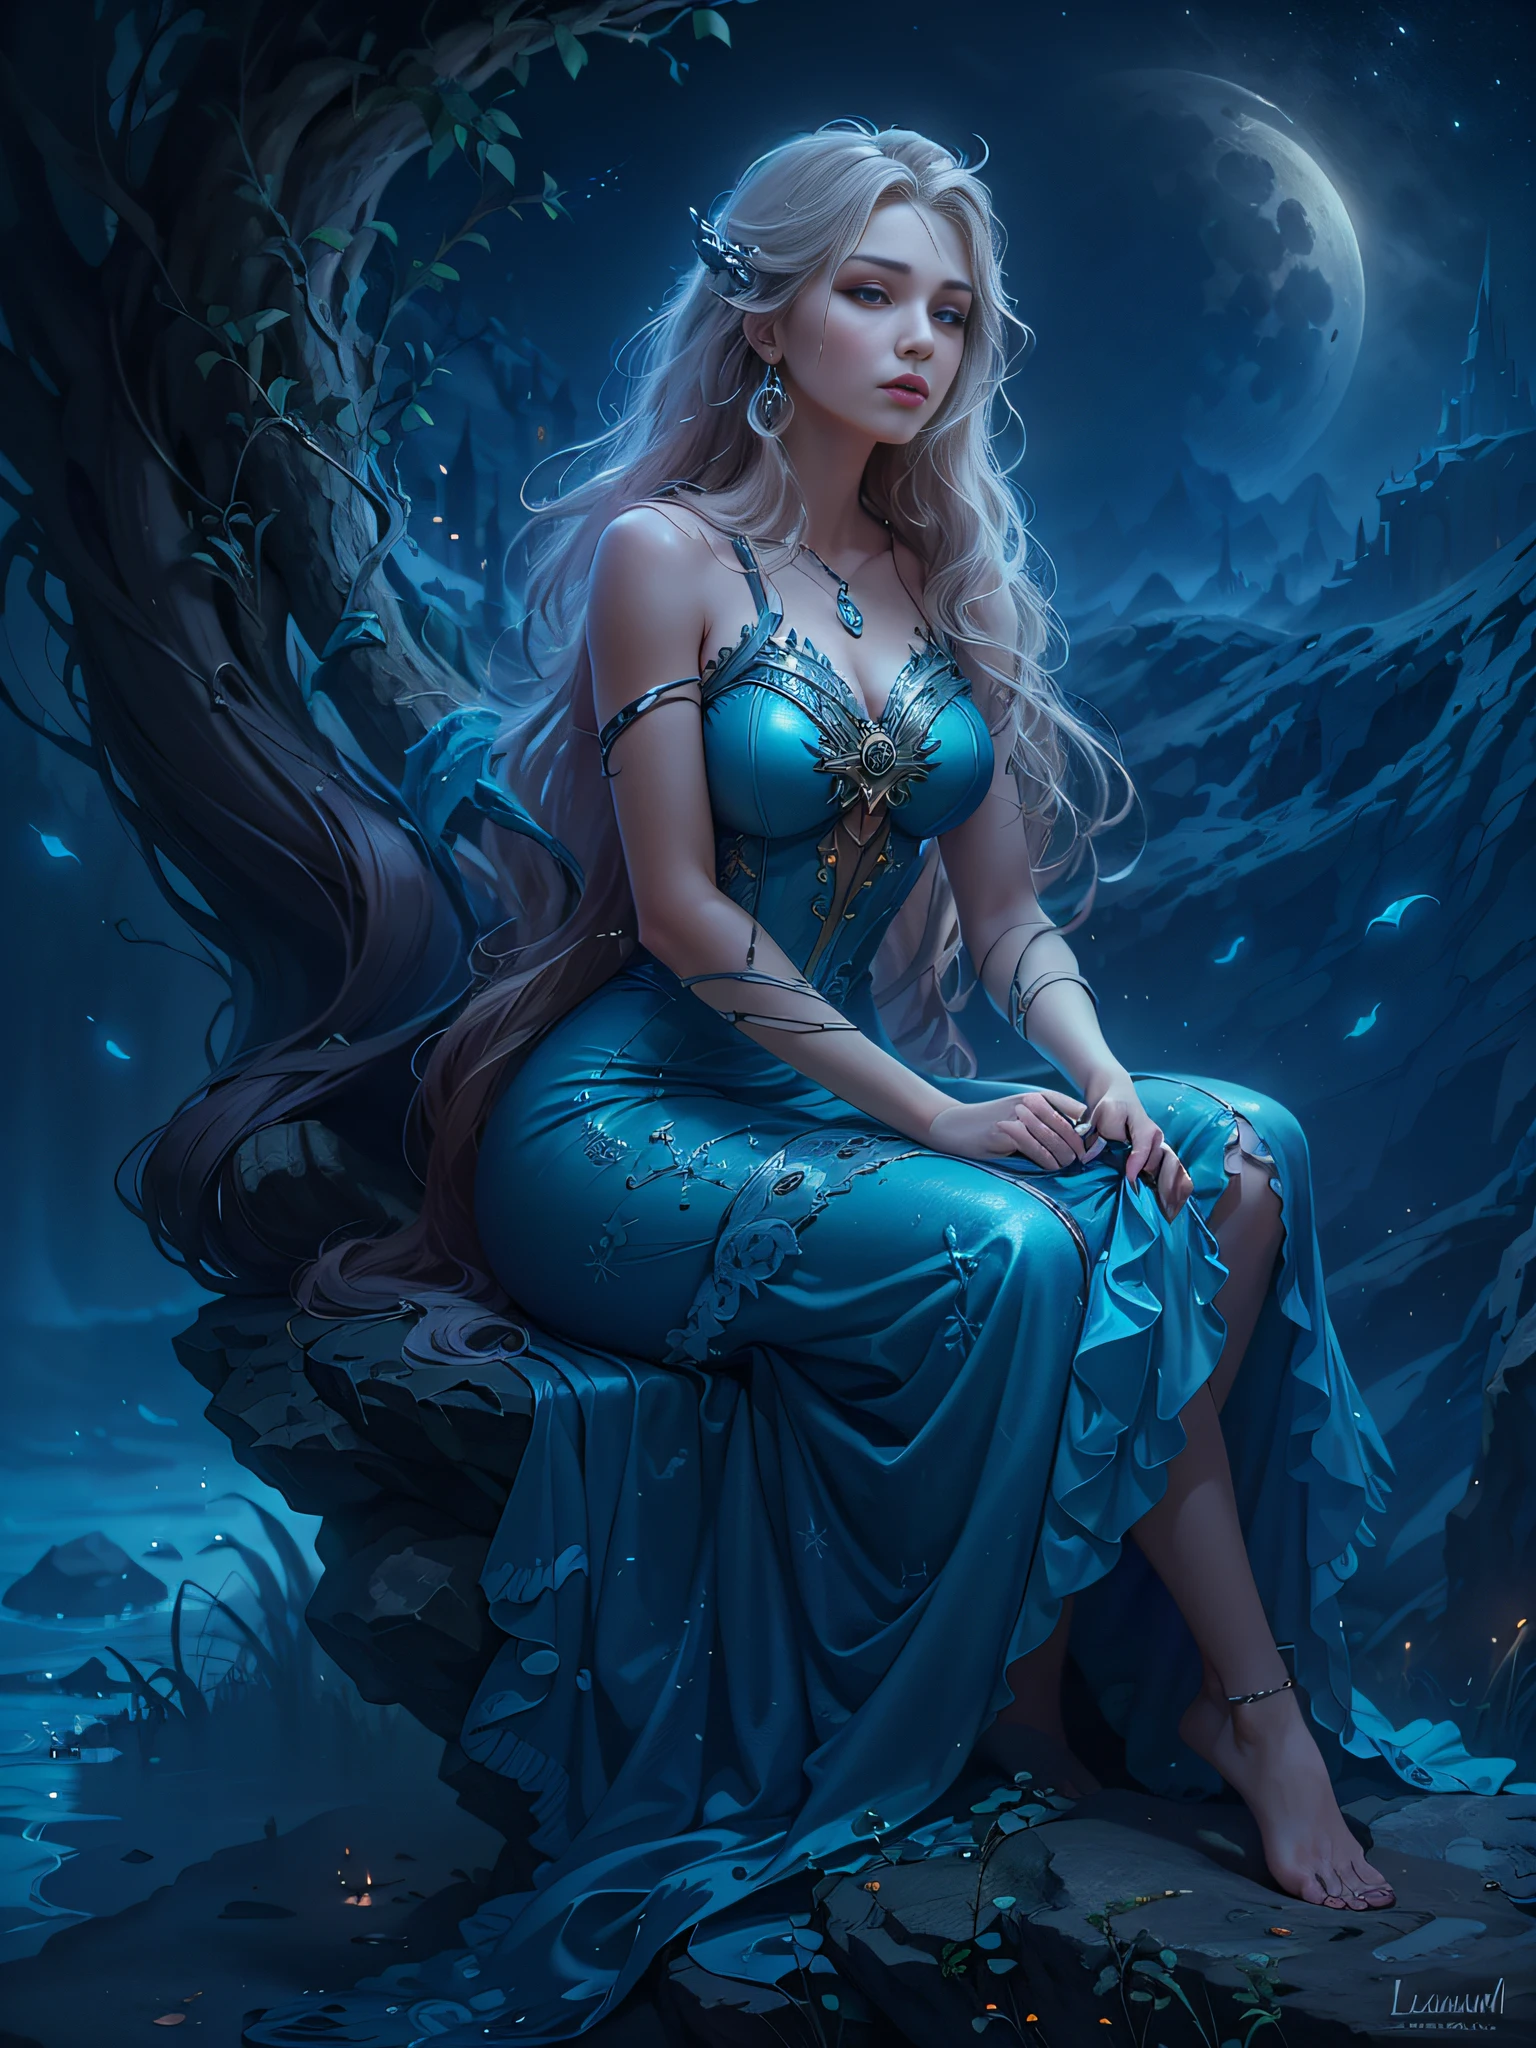 Arafed Frau in einem blauen Kleid sitzt auf einem Felsen, Lucian, Mondgöttin, karol bak uhd, Porträt einer nordischen Mondgöttin, Mondscheinnacht verträumte Atmosphäre, Fantasie Frau, Göttin des Mondes, Traum magisch、Ätherisch、dunkel, ätherische Schönheit, Mondgöttin, Schöne Rapunzel, wunderschönes Fantasiemädchen, verträumte Nacht